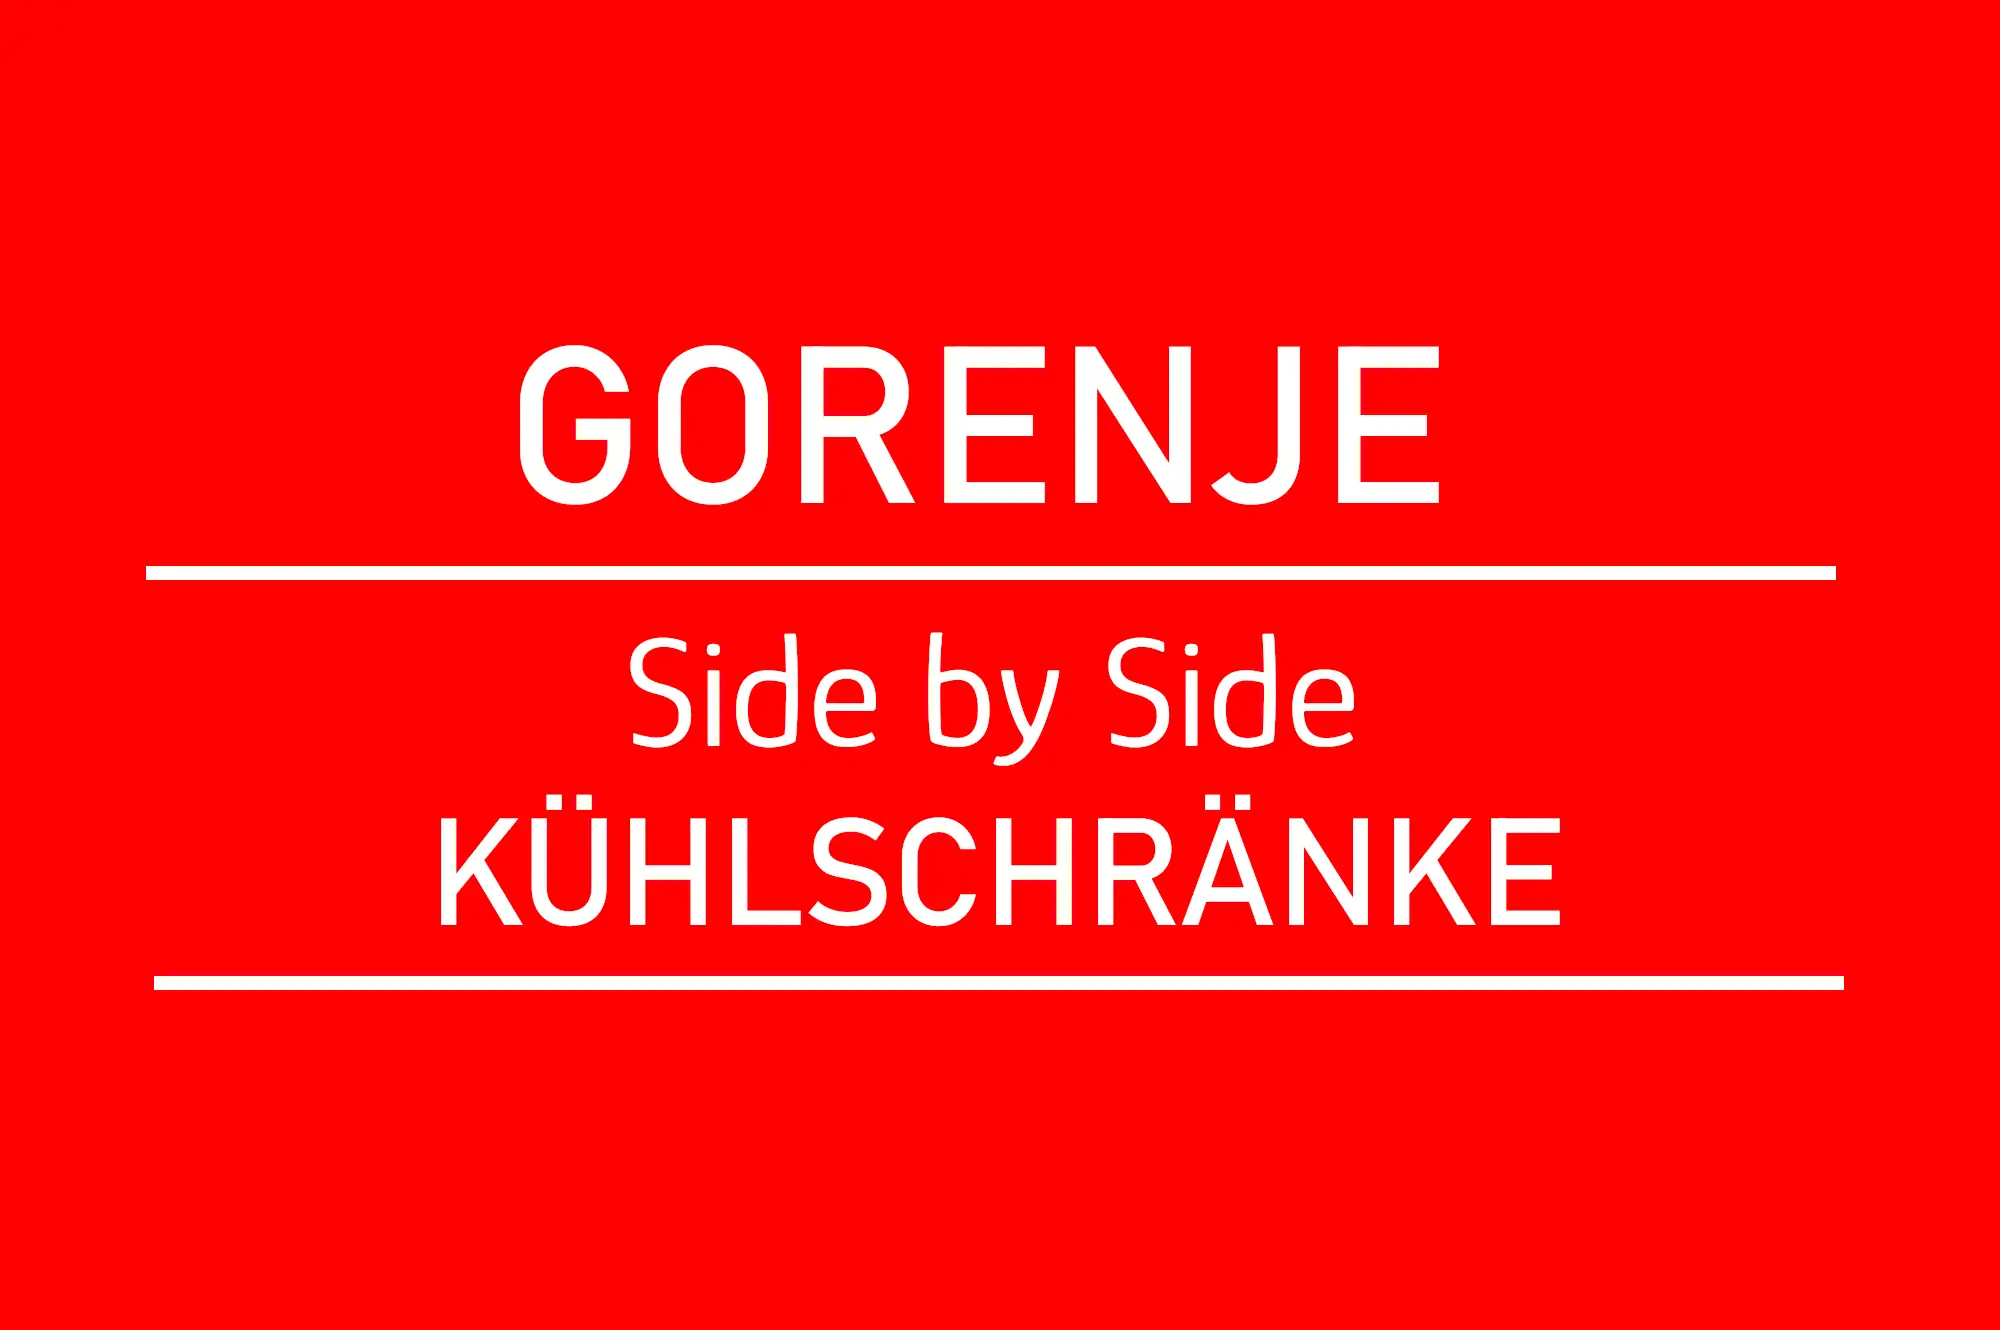 Gorenje Side by Side Kühlschränke